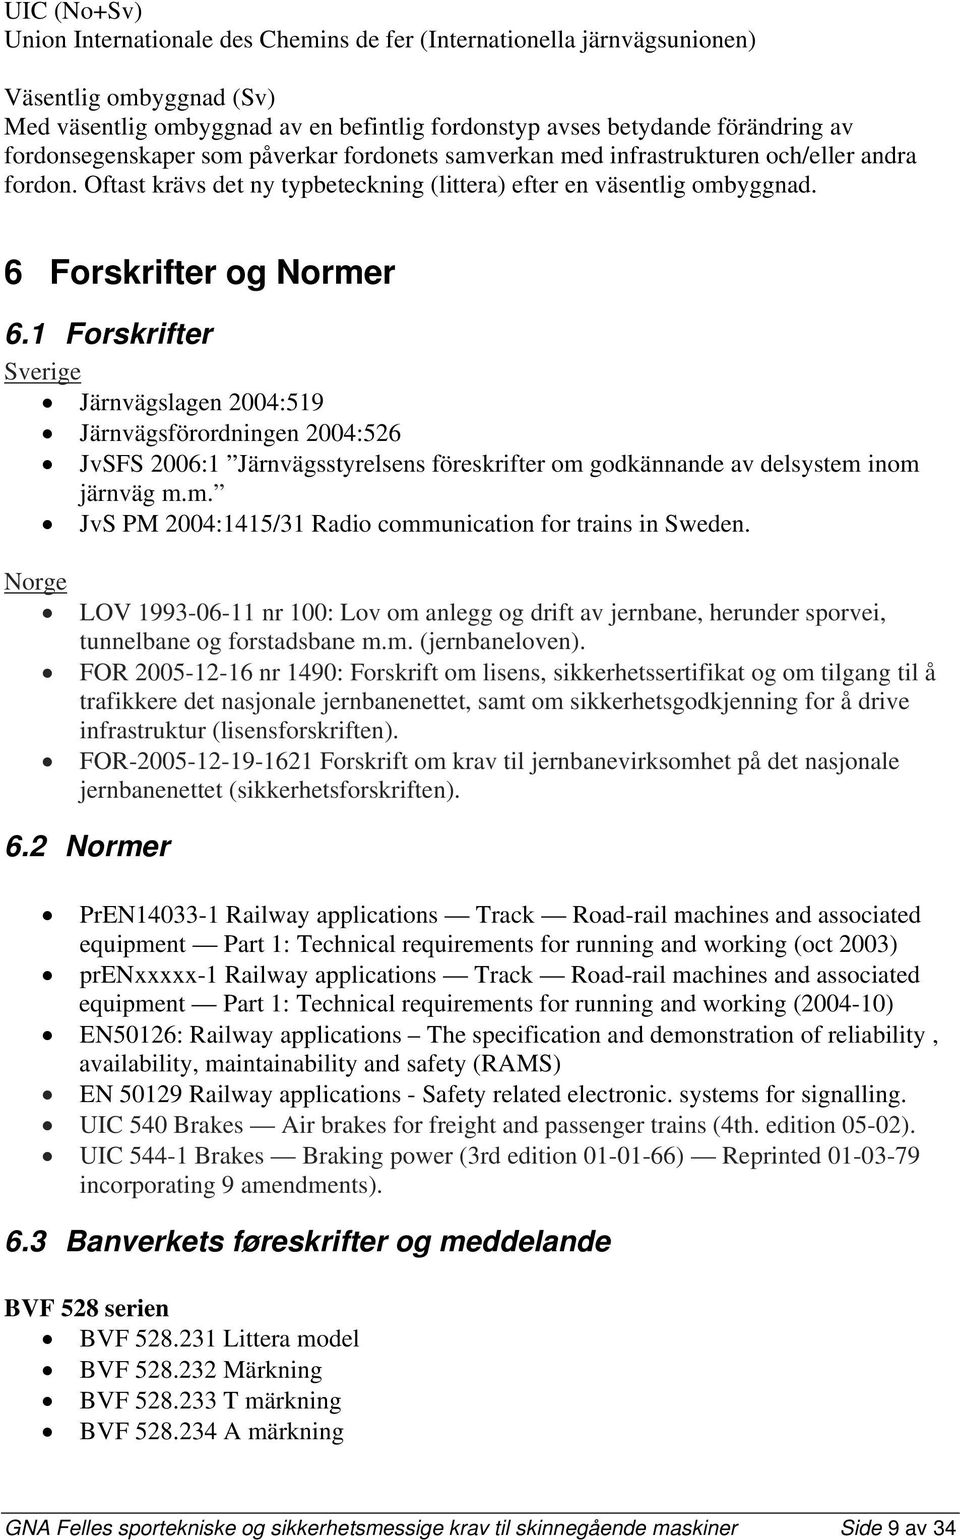 1 Forskrifter Sverige Järnvägslagen 2004:519 Järnvägsförordningen 2004:526 JvSFS 2006:1 Järnvägsstyrelsens föreskrifter om godkännande av delsystem inom järnväg m.m. JvS PM 2004:1415/31 Radio communication for trains in Sweden.